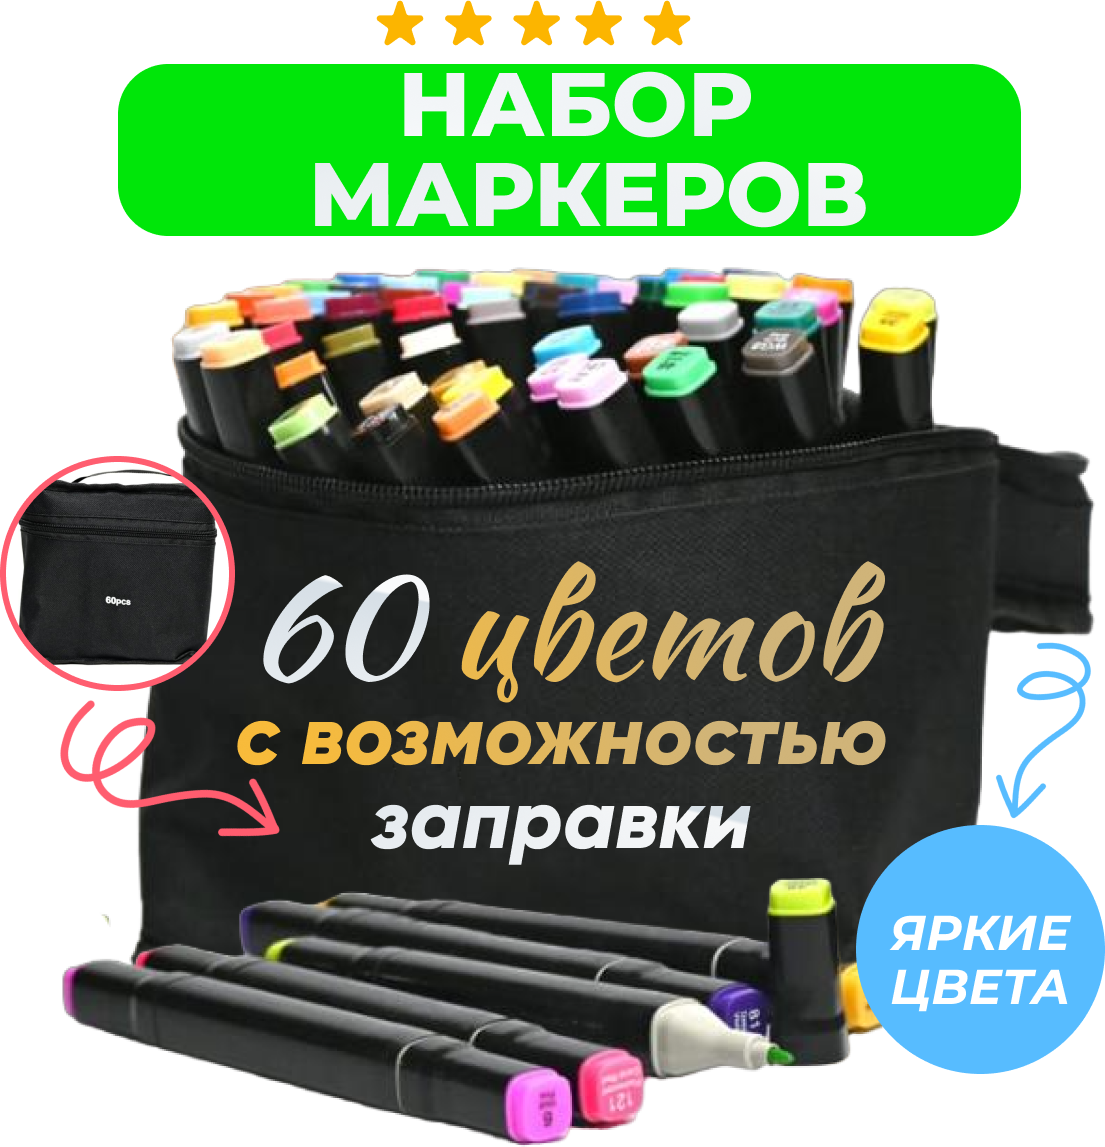 Маркеры (фломастеры) для скетчинга 60 штук (цветов) (набор профессиональныхдвухсторонних скетч маркеров в чехле) — купить в интернет-магазине понизкой цене на Яндекс Маркете